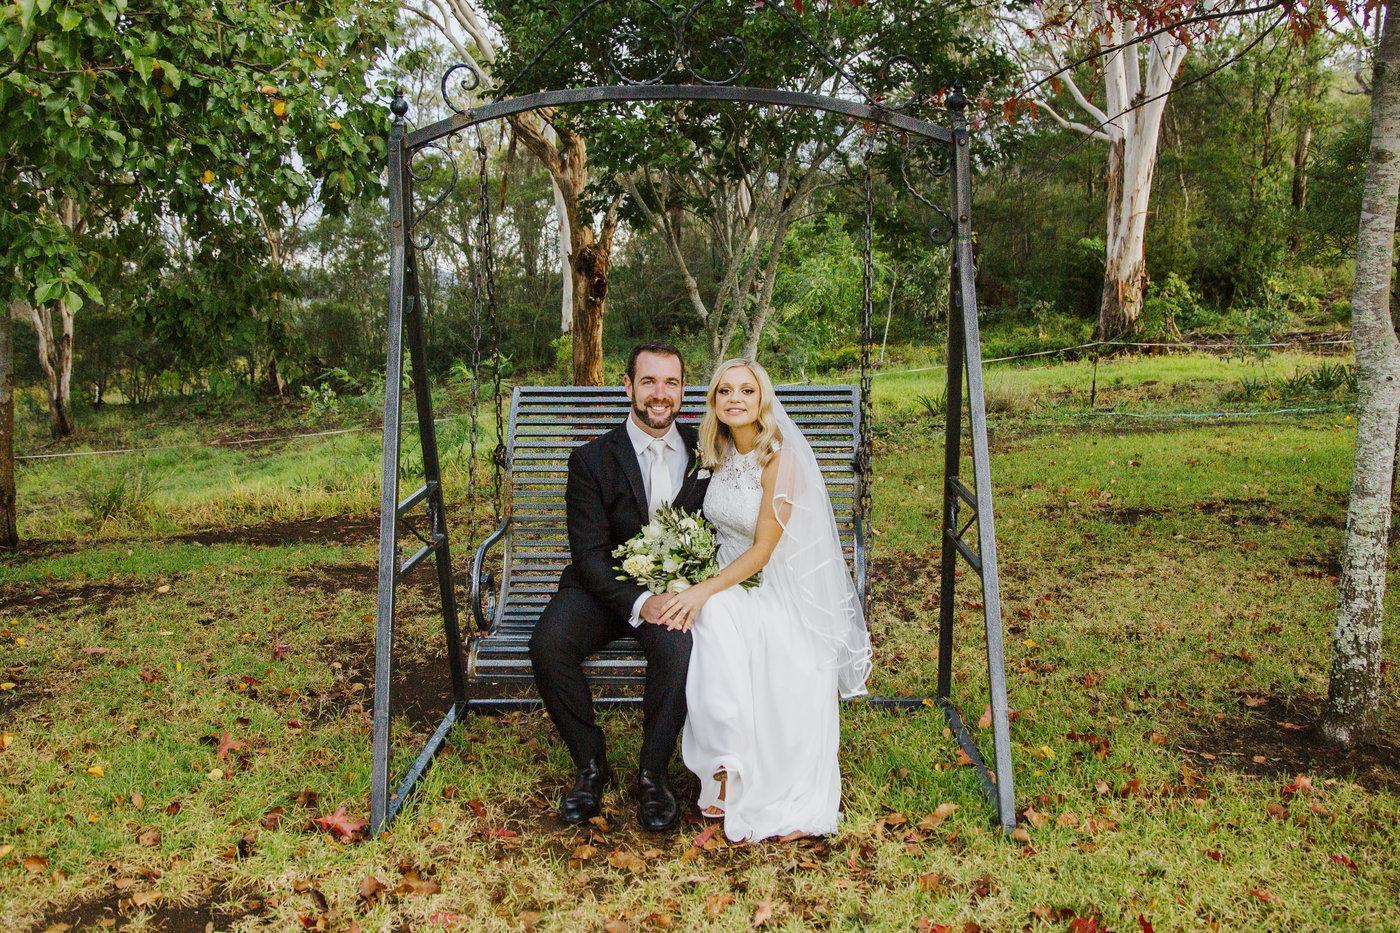 Wedding Photography couple on swing